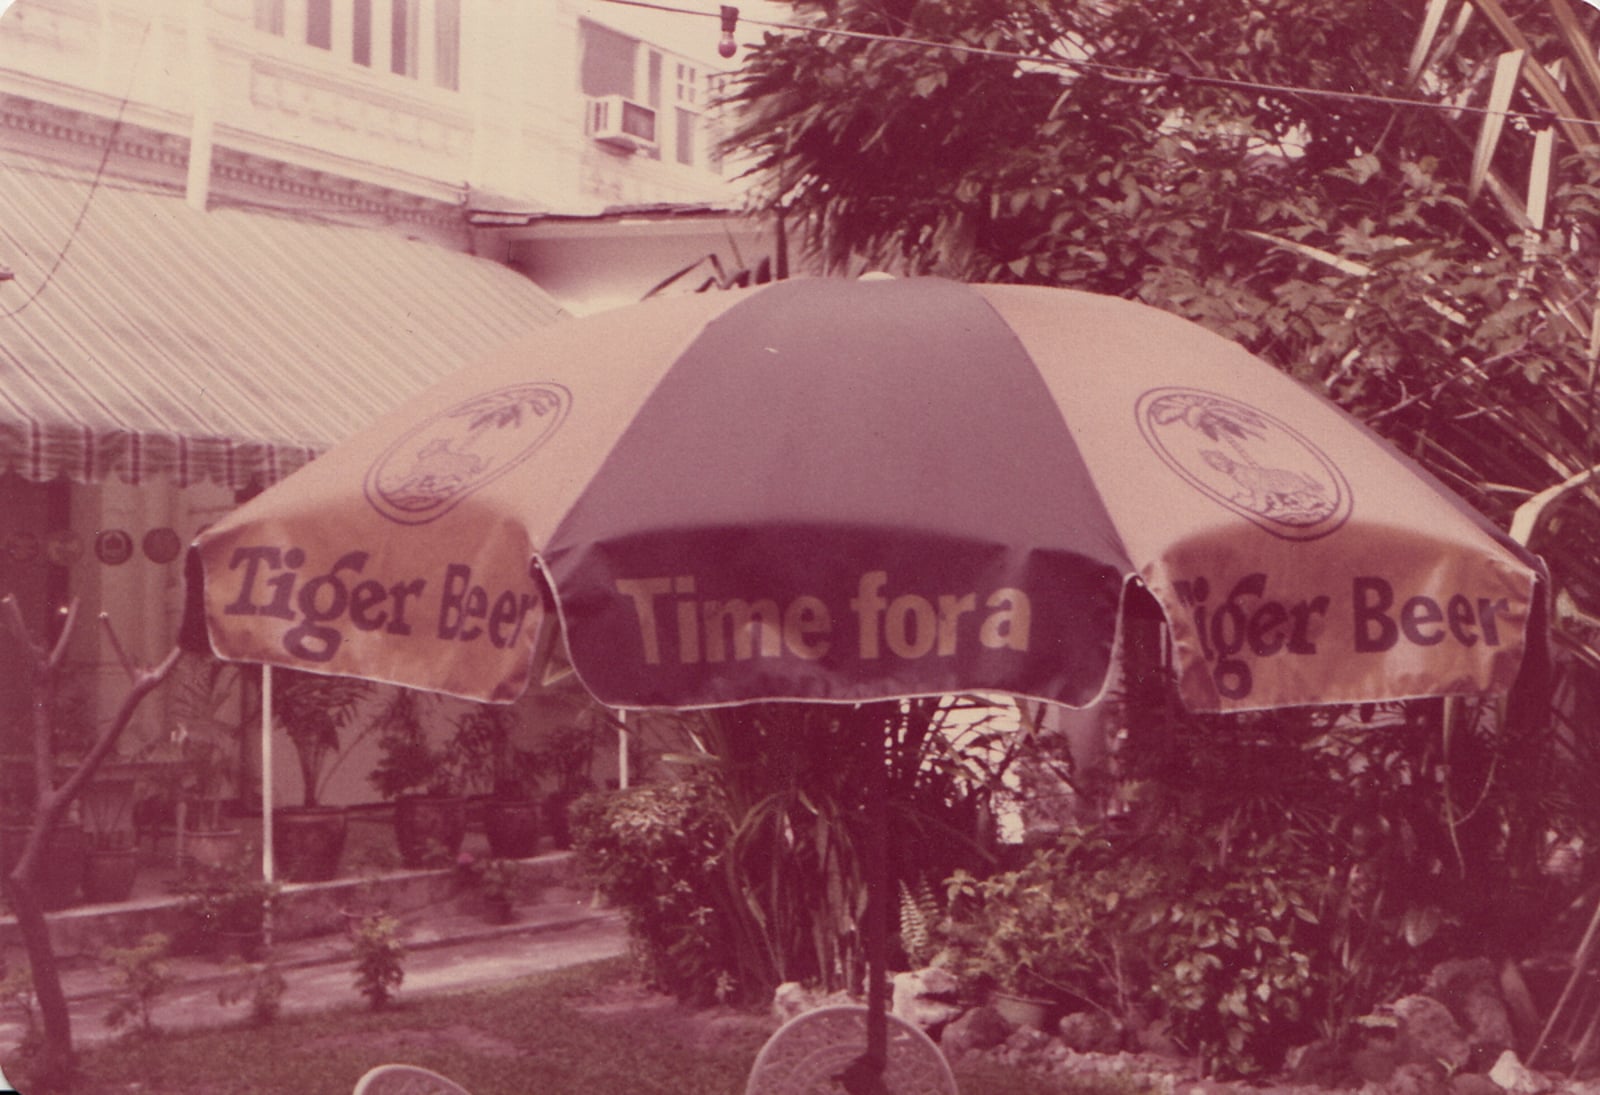 Tiger Beer Umbrella Photograph